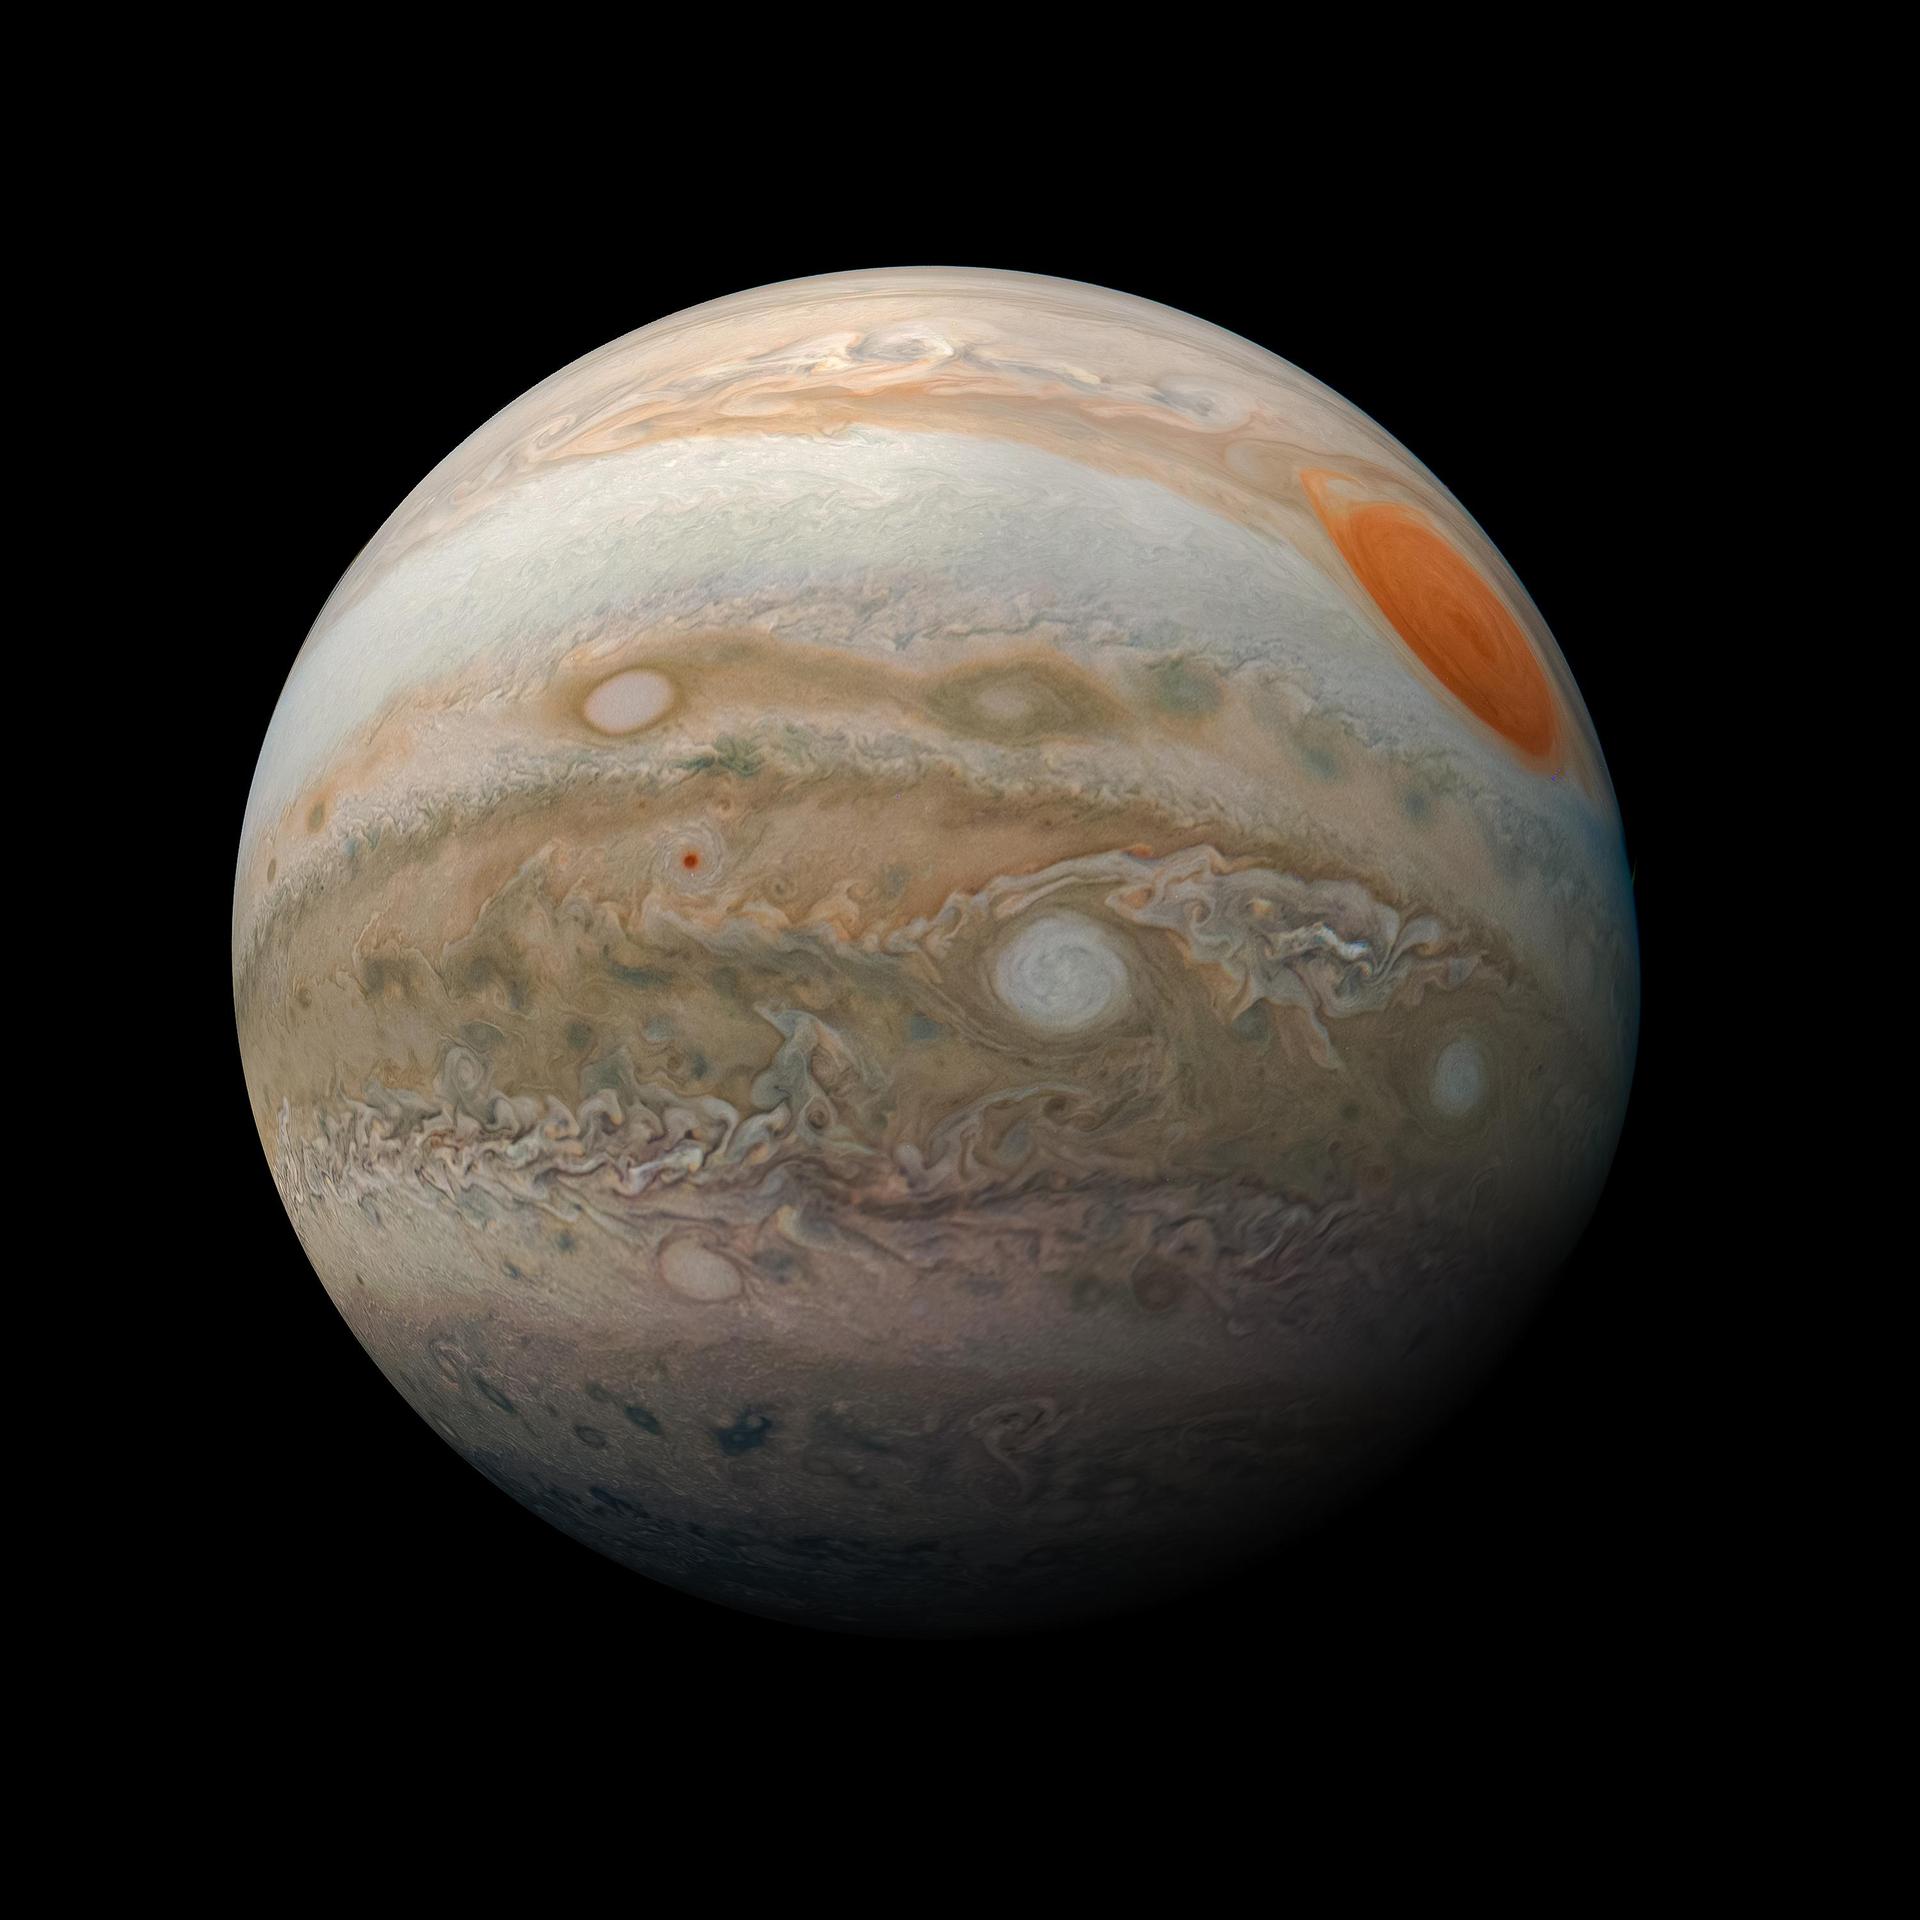 En près de 60 ans, Jupiter n'a jamais été aussi proche, observez-la !